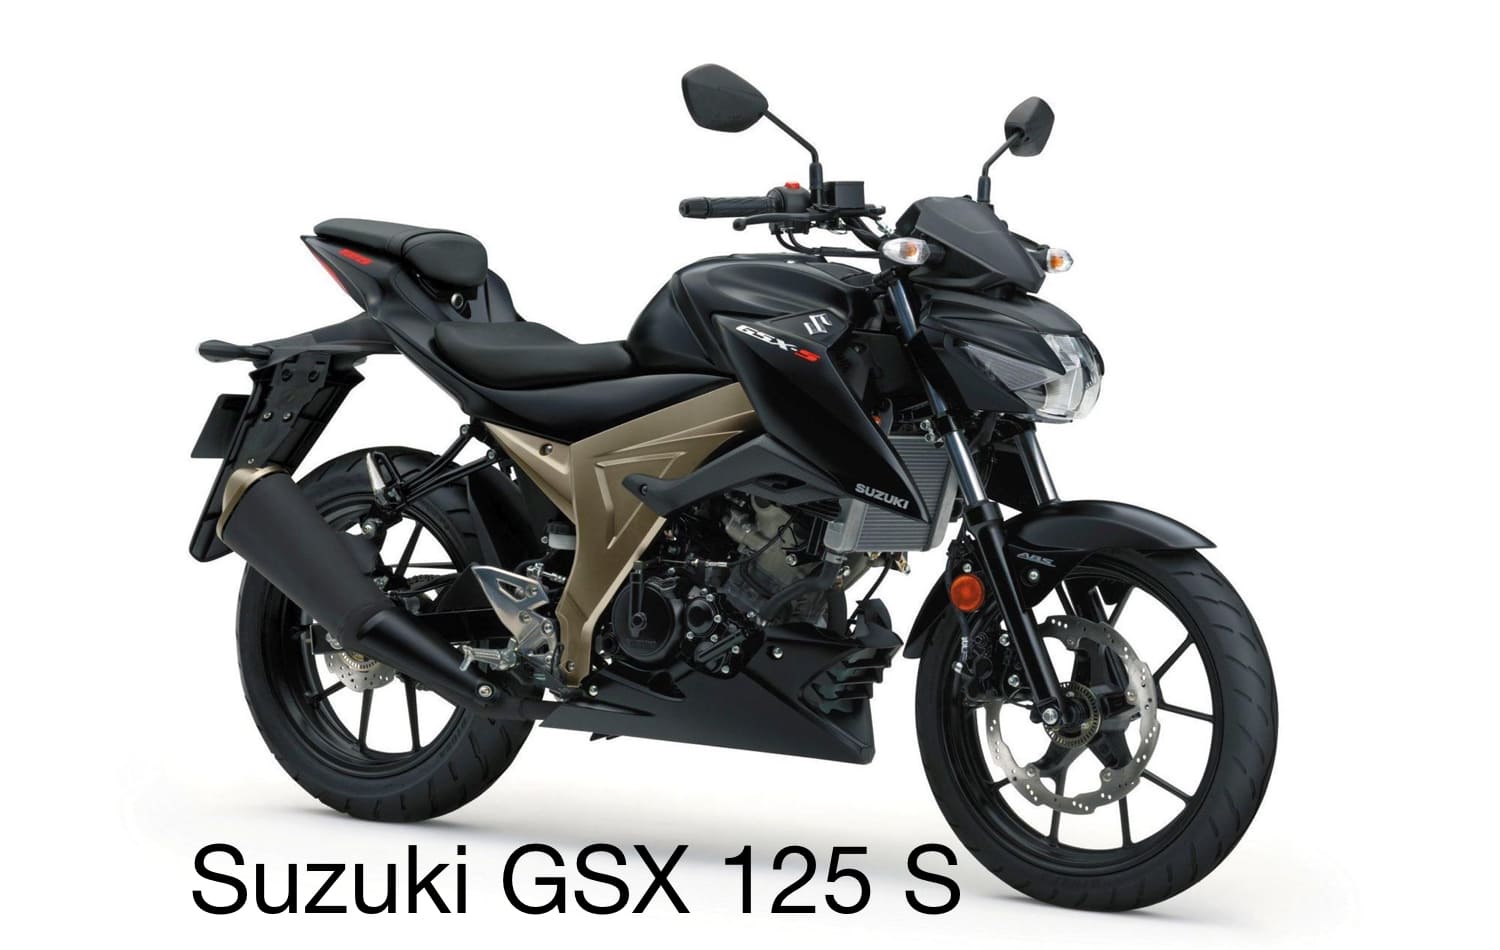 Suzuki GSX 125 S